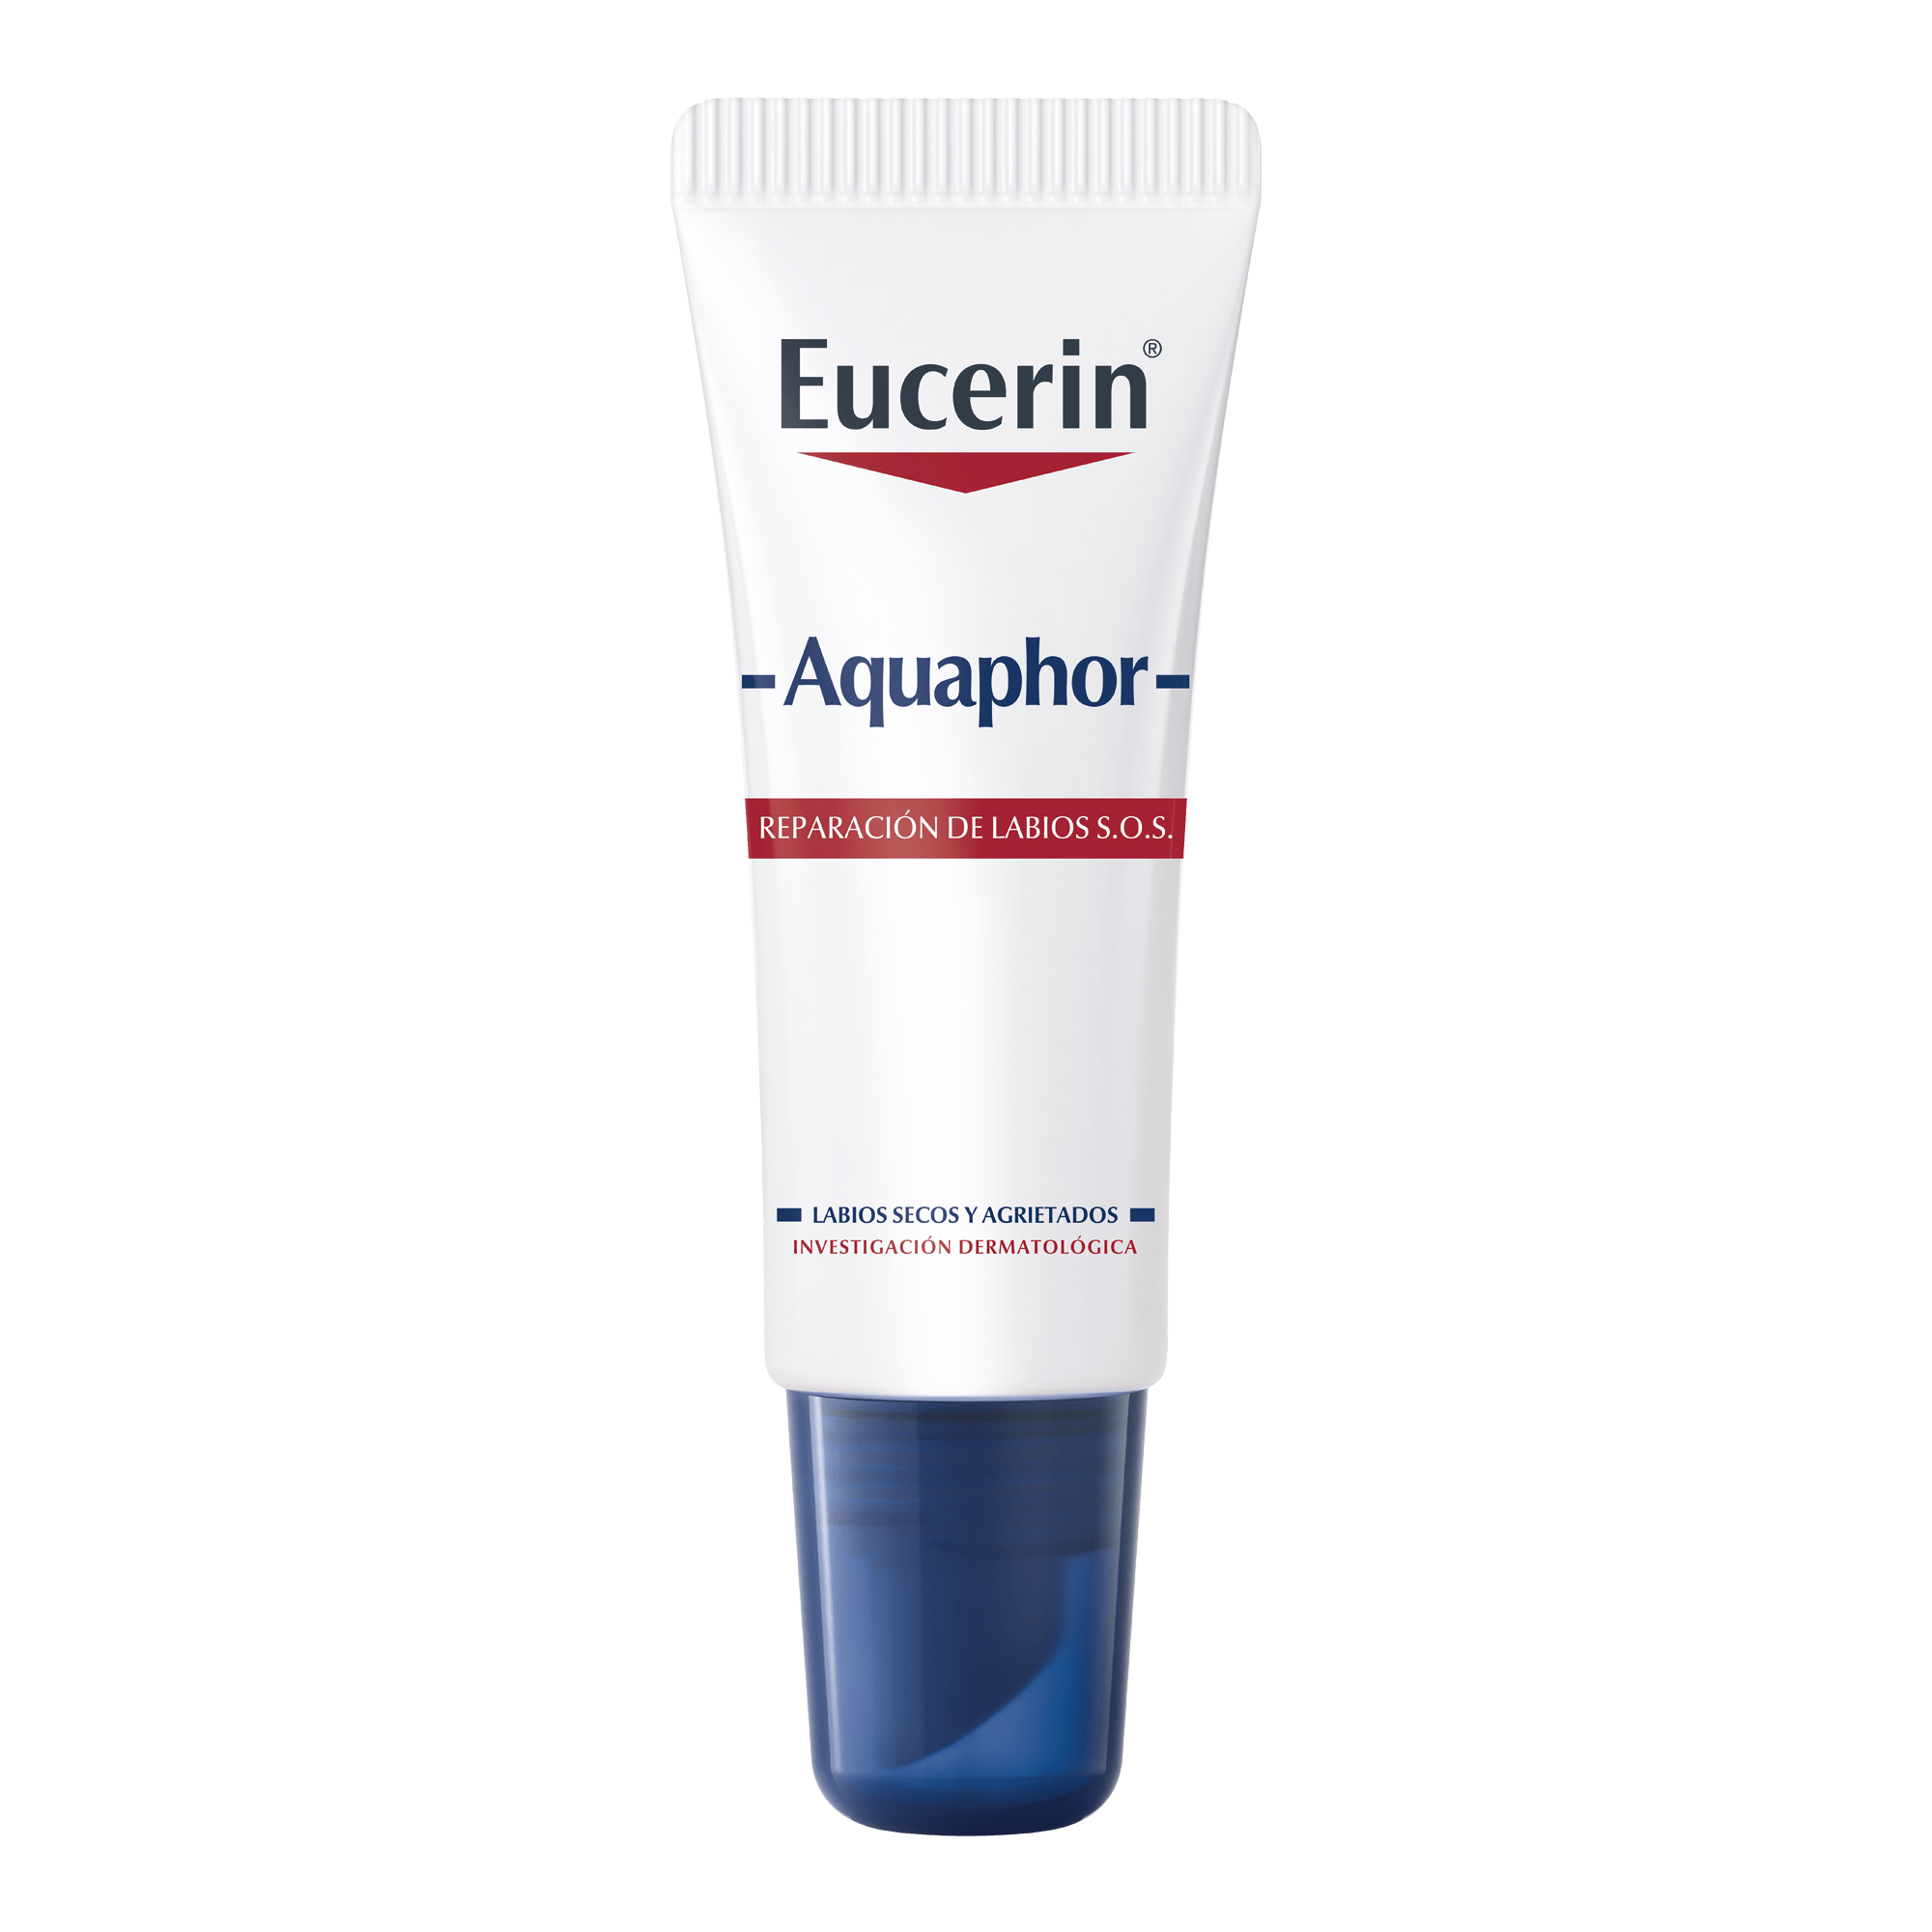 Eucerin Aquaphor Reparador de Labios SOS